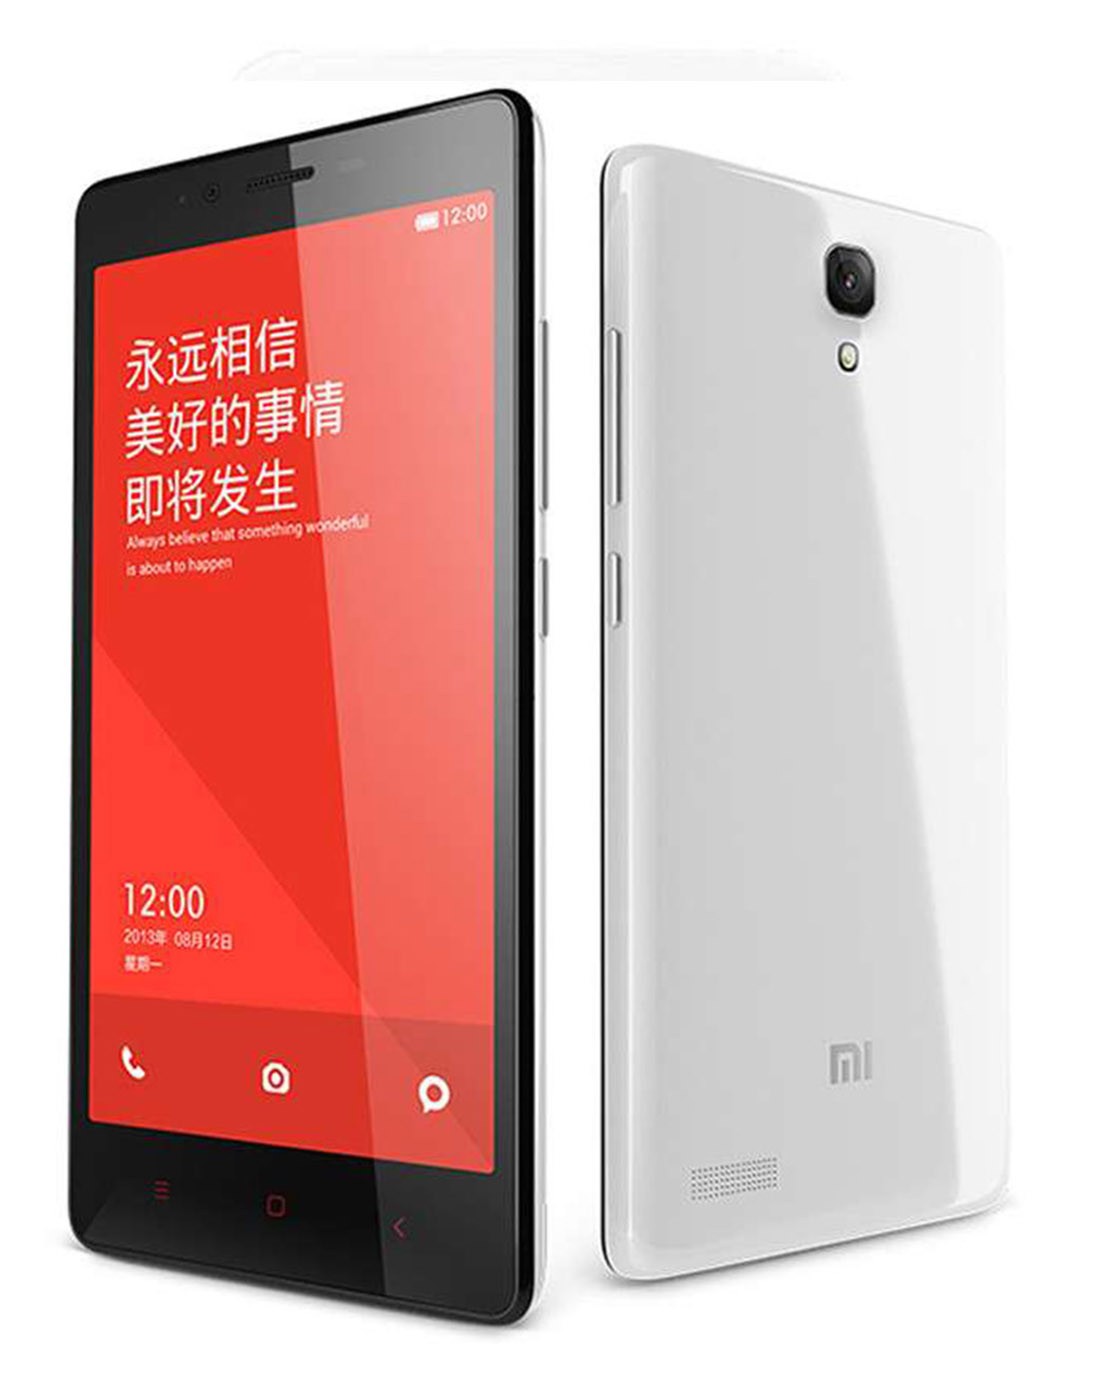 (比价不上线)红米note白 增强版 移动4g手机